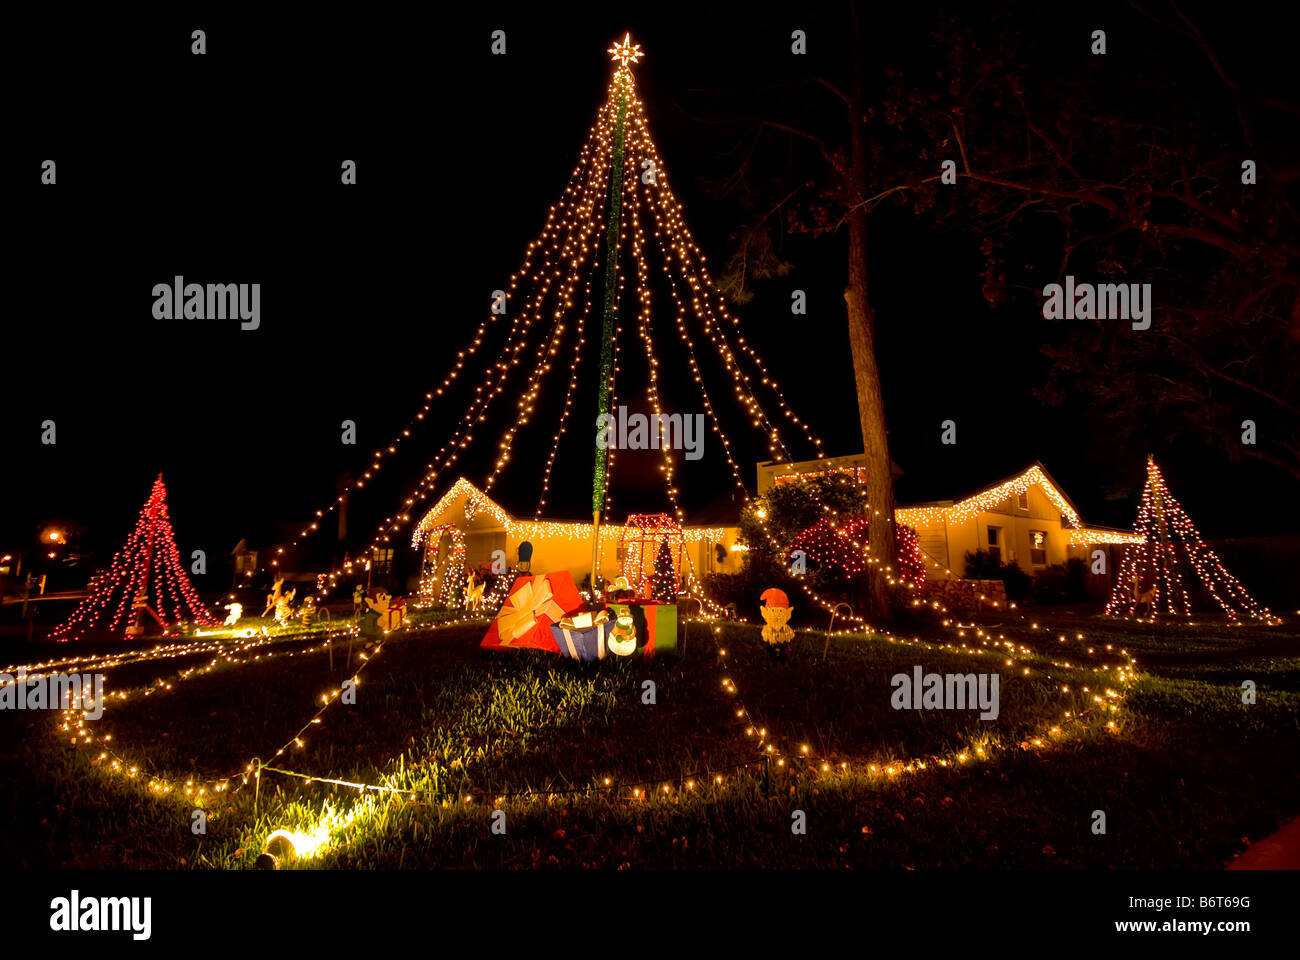 Weihnachten Dekoration Weihnachten Bäume Elfen Zuhause bedeckt in Weihnachten Lichter aufwendige Hof Display dunkel Stockfoto